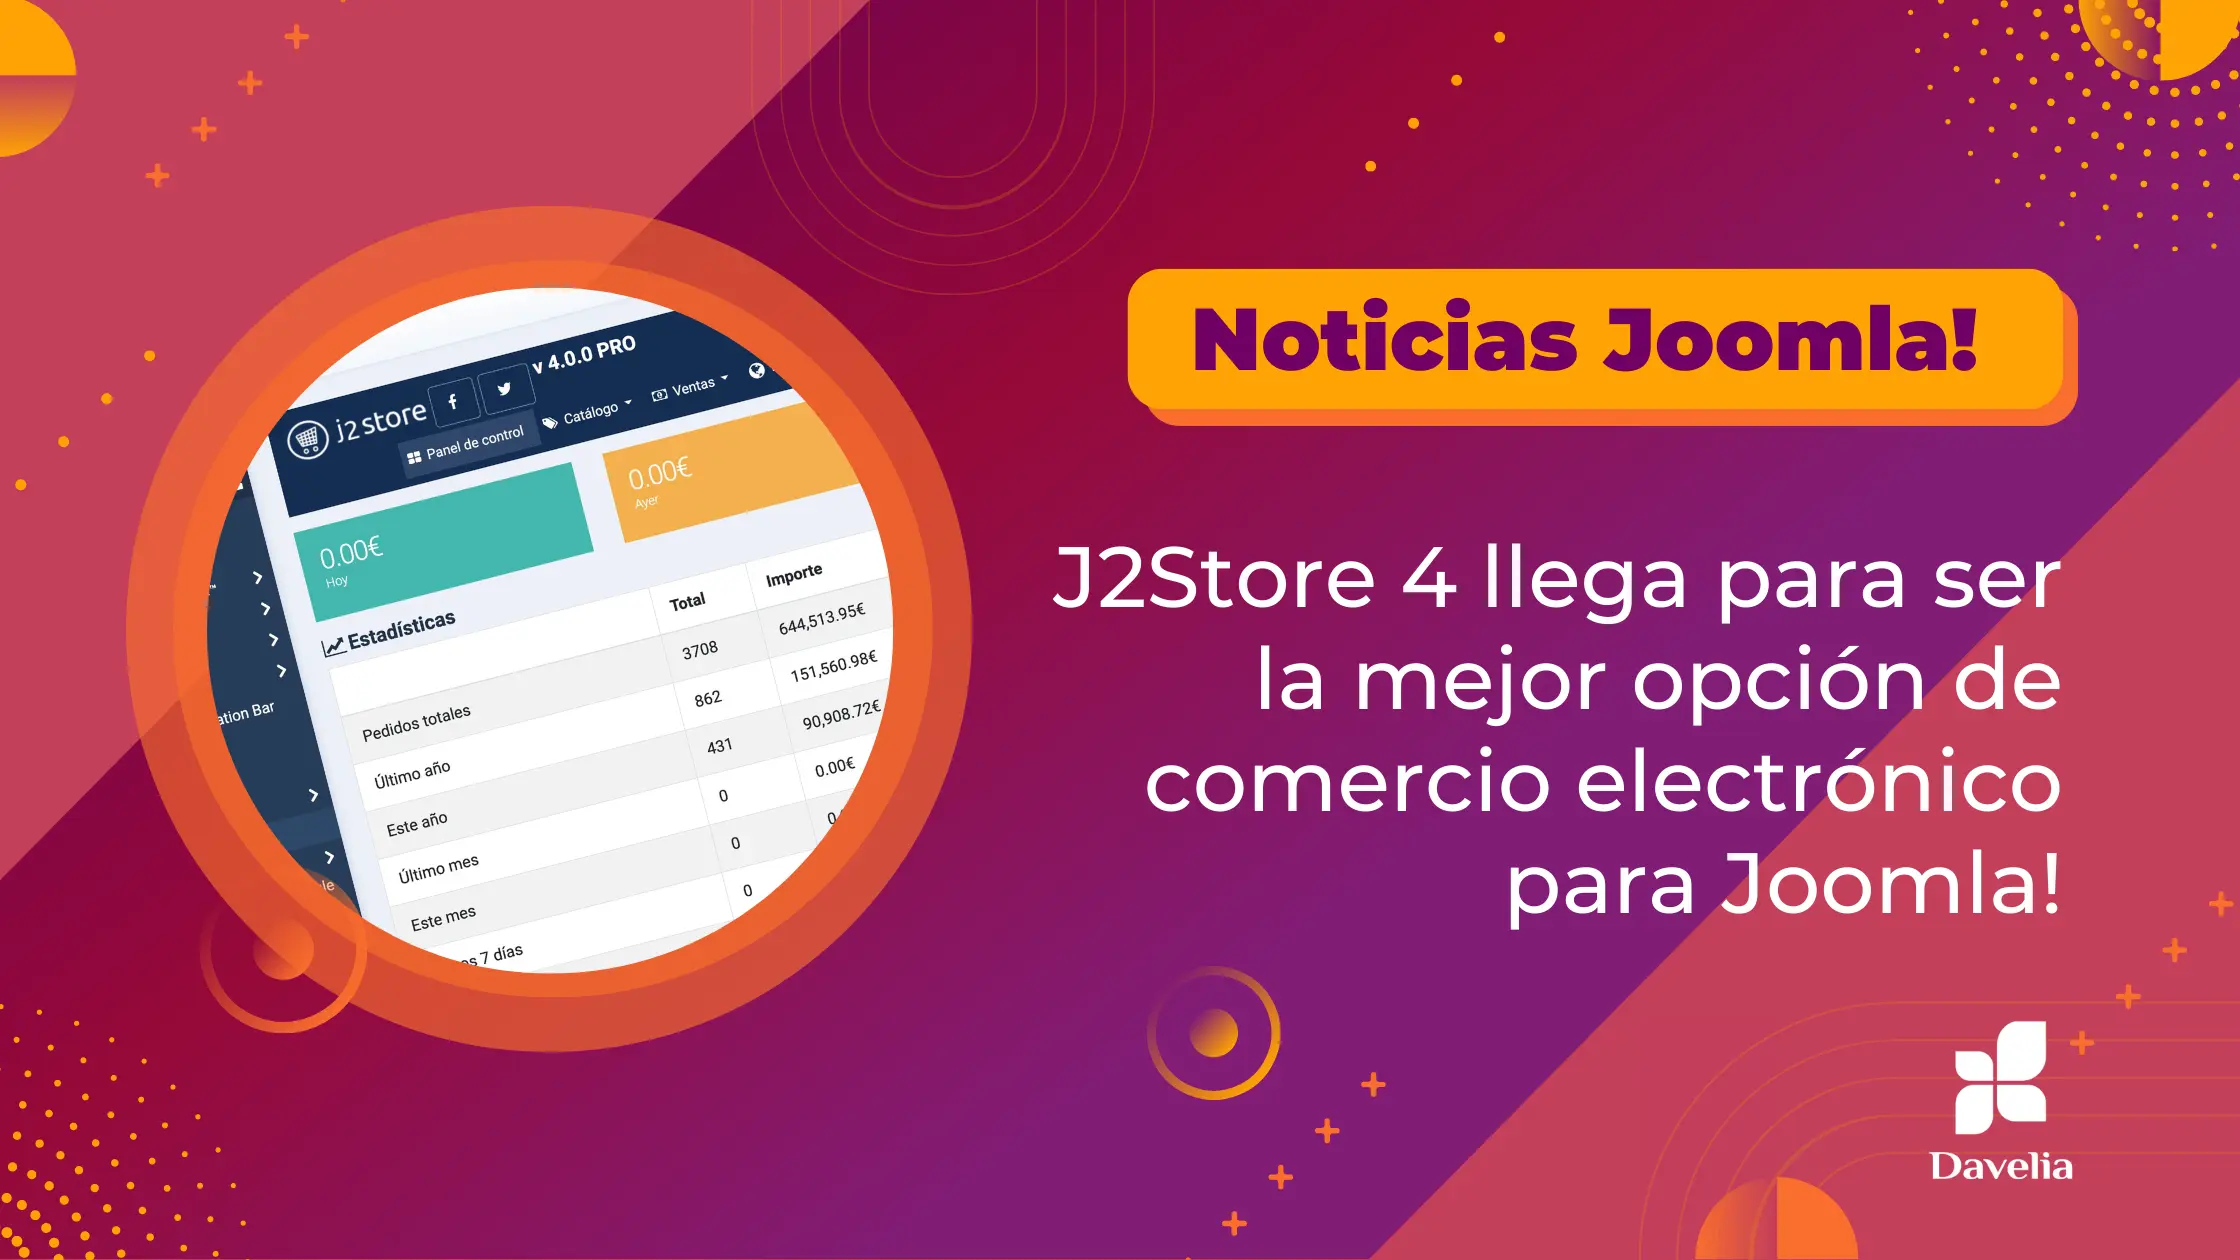 J2Store 4 llega para ser la mejor opción de comercio electrónico para Joomla!